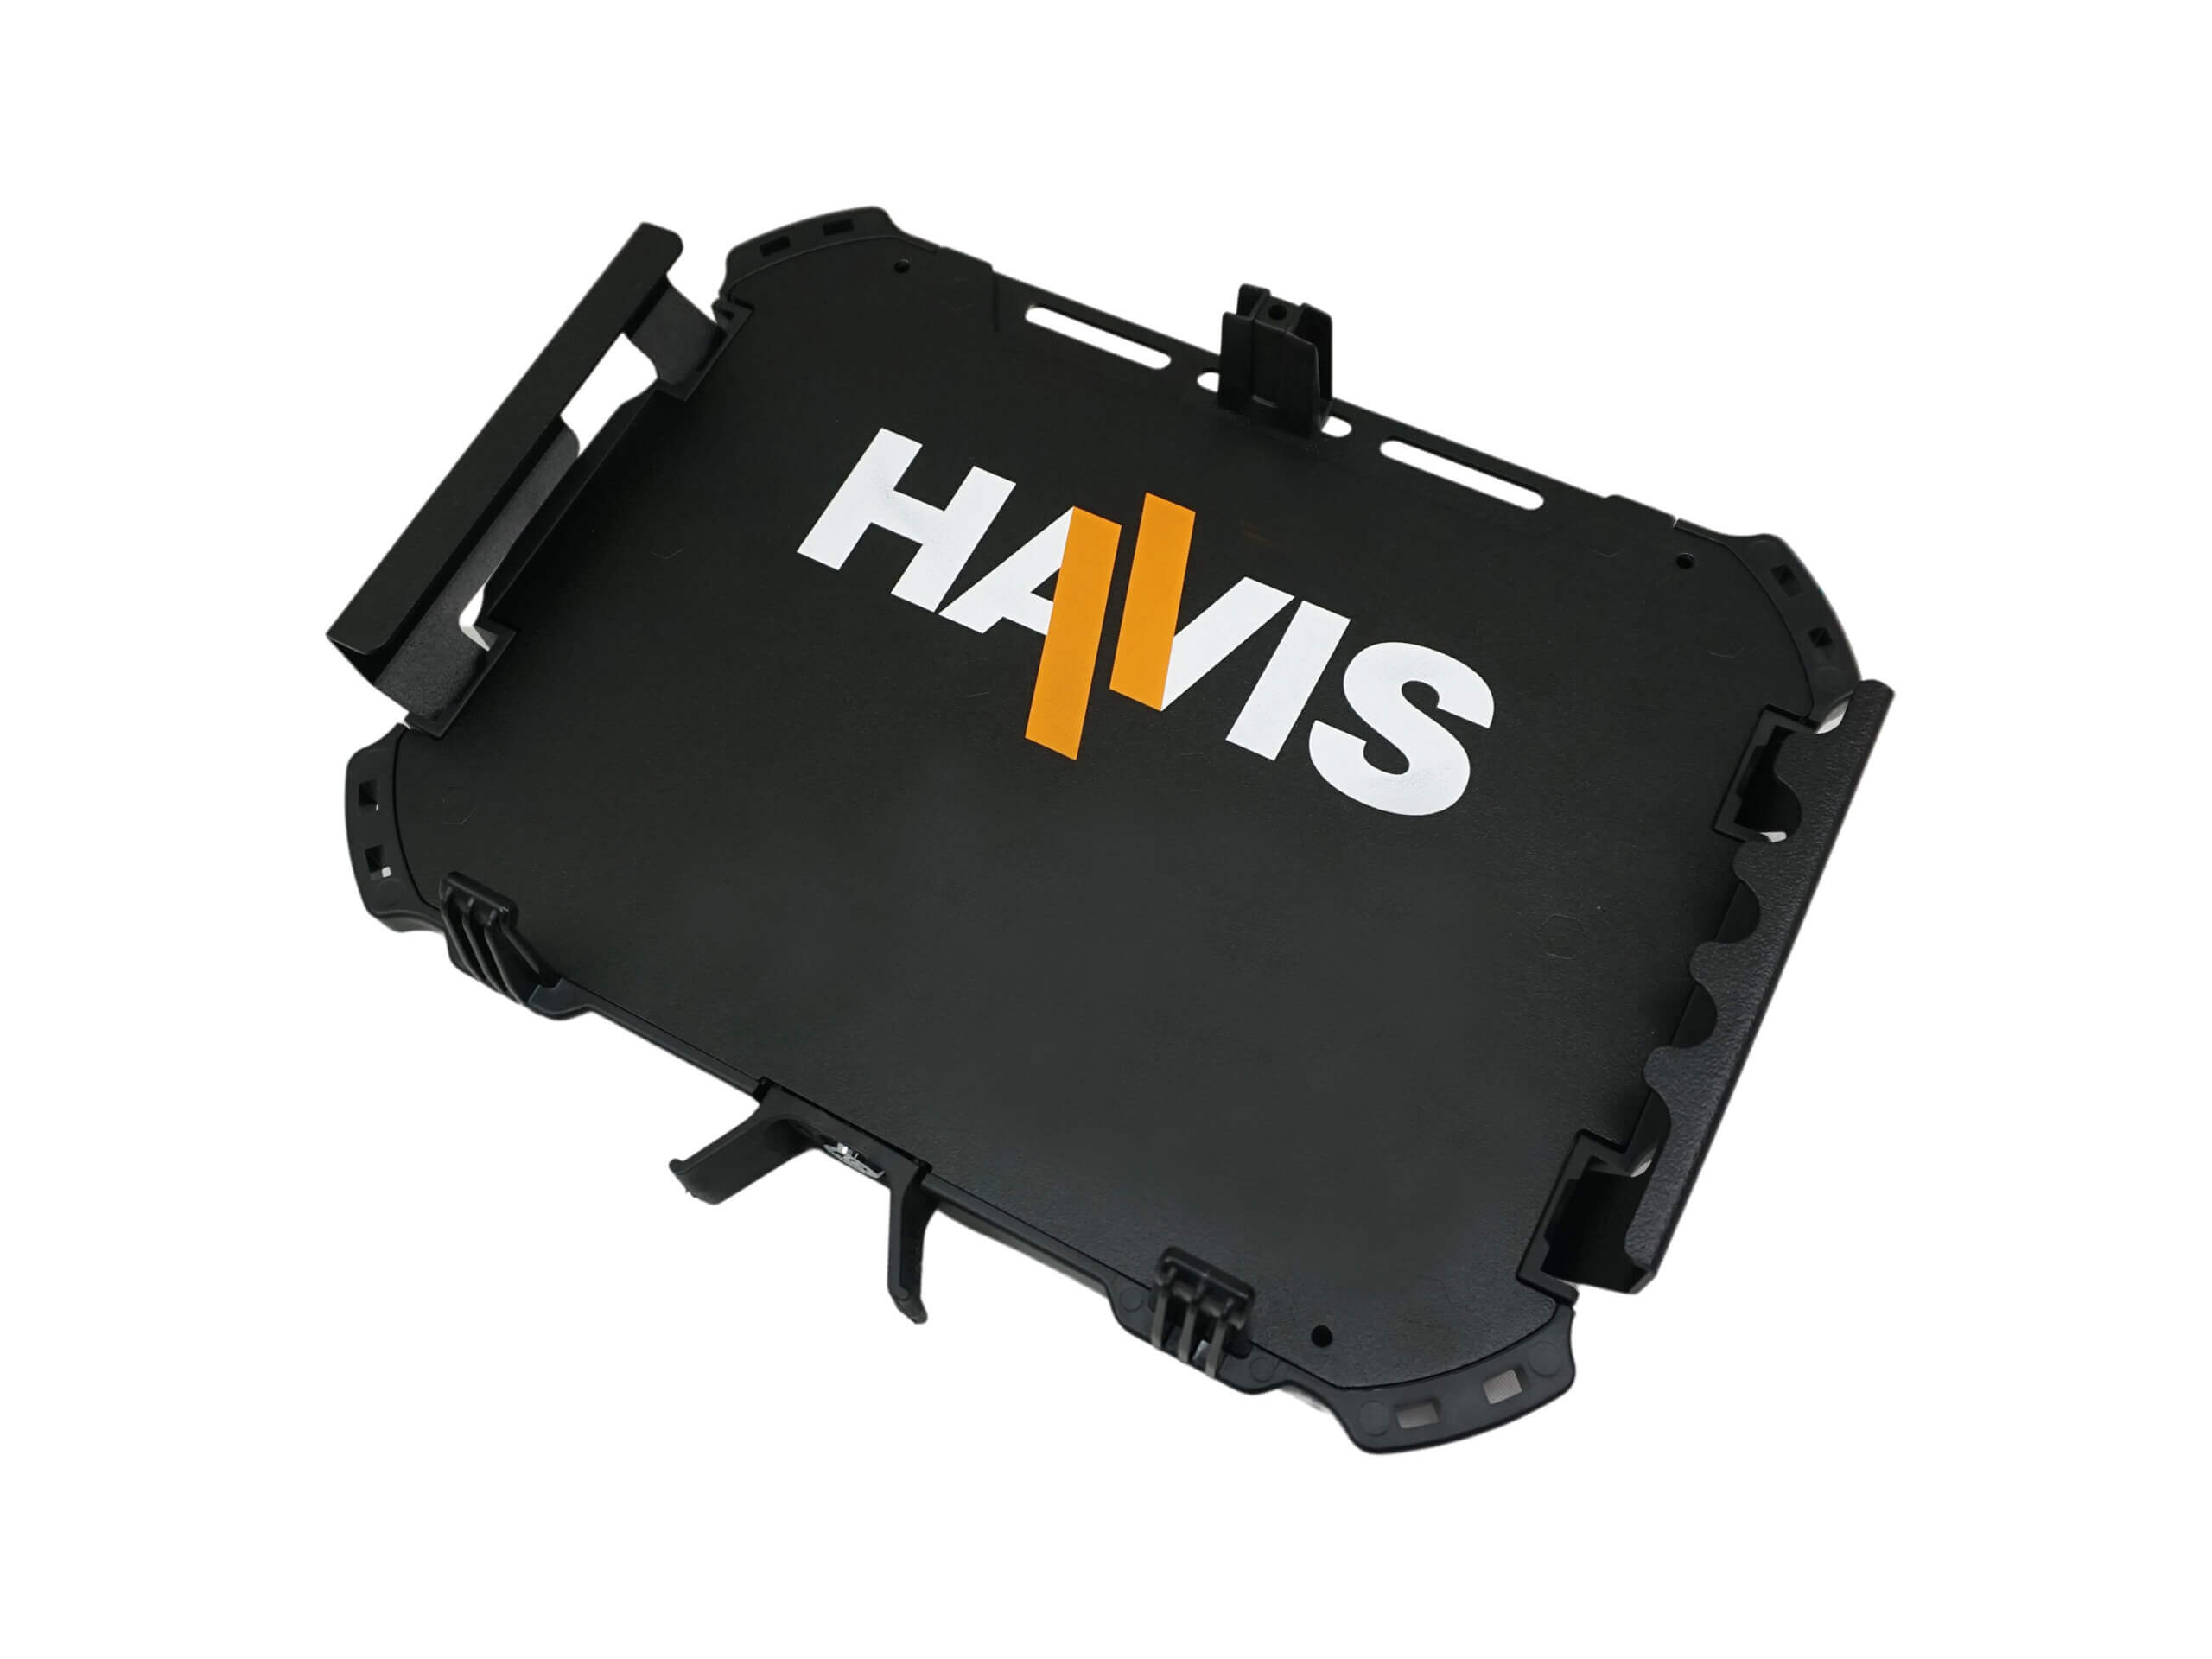 Havis Rugged Cradle for Getac F110 G5 & Earlier Generation Rugged Tablet